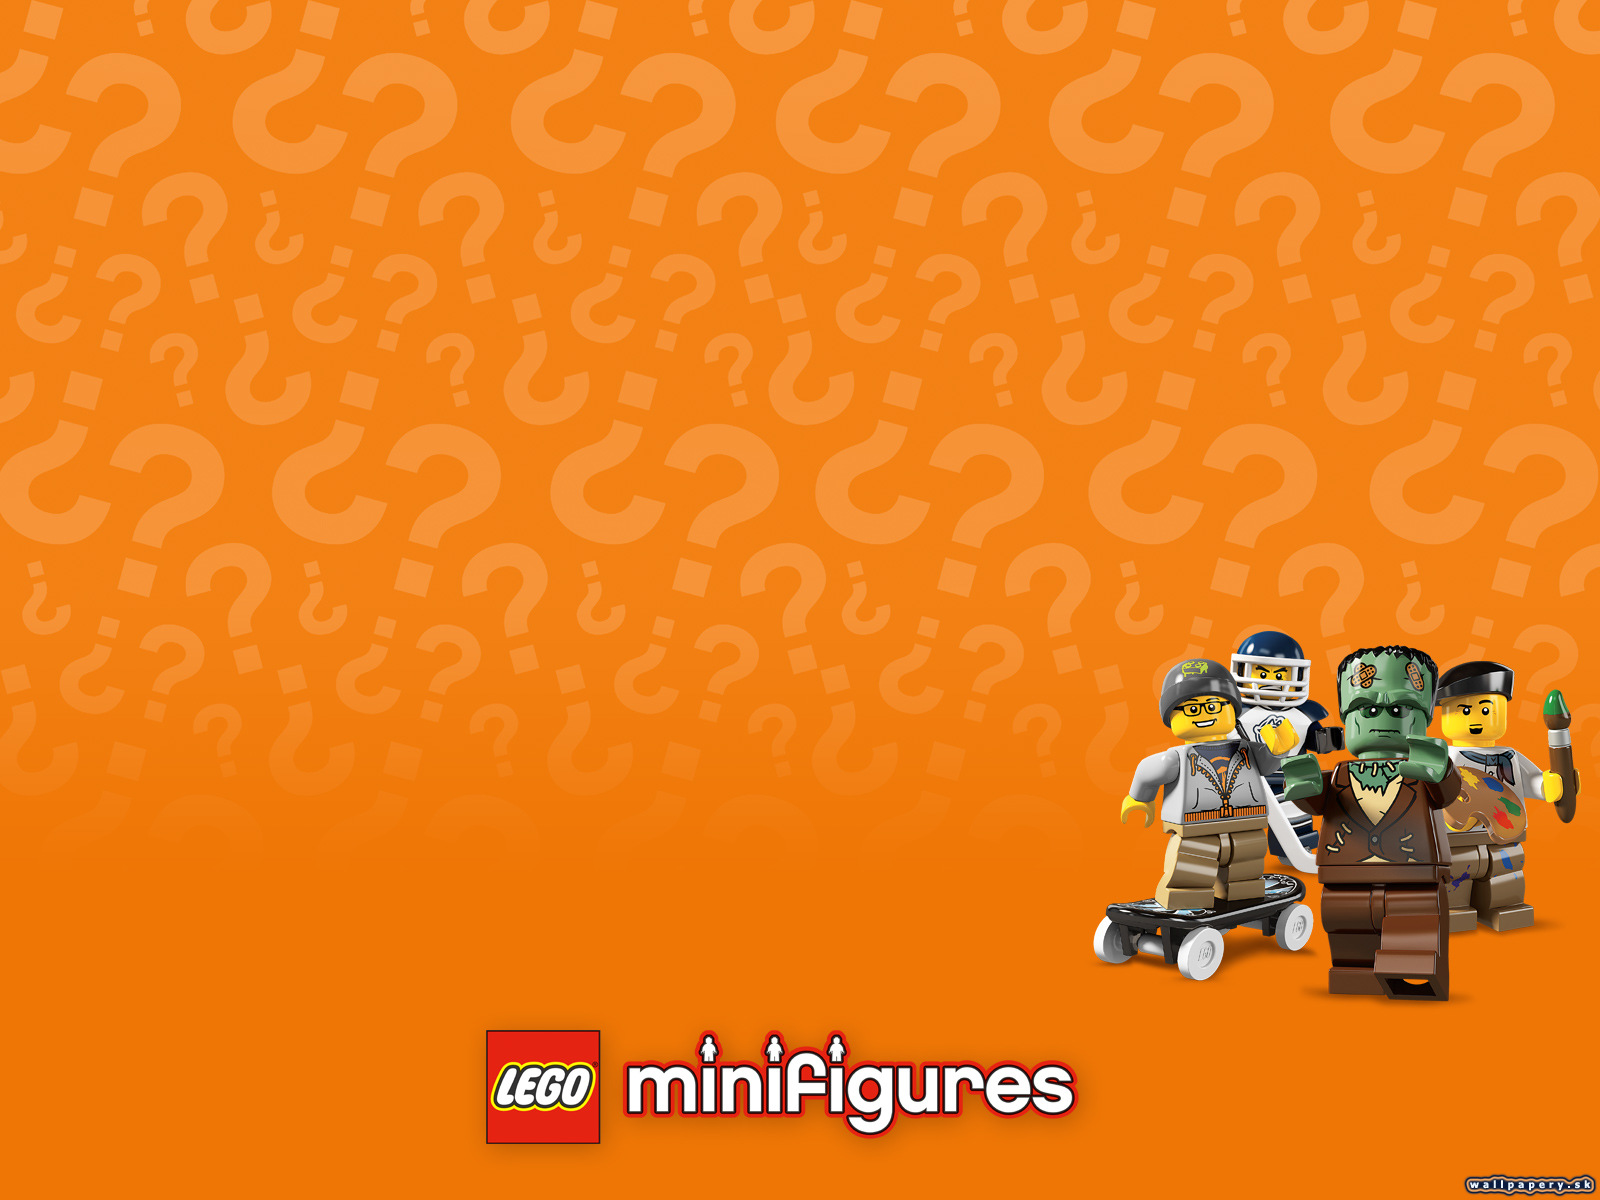 LEGO Minifigures Online - wallpaper 2